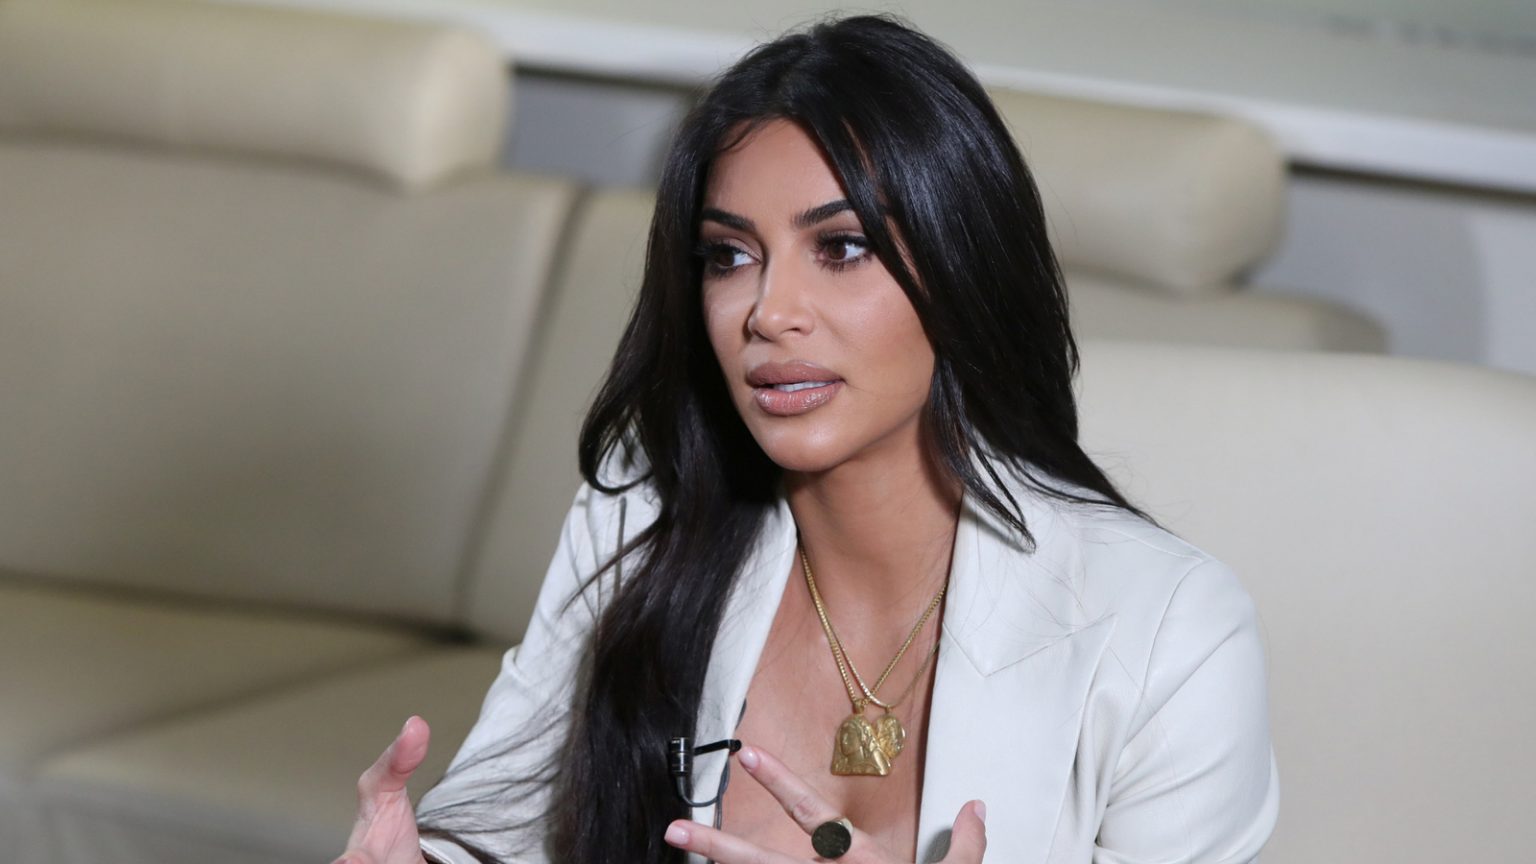 Kim Kardashian dejó a Kanye West "para ser feliz"